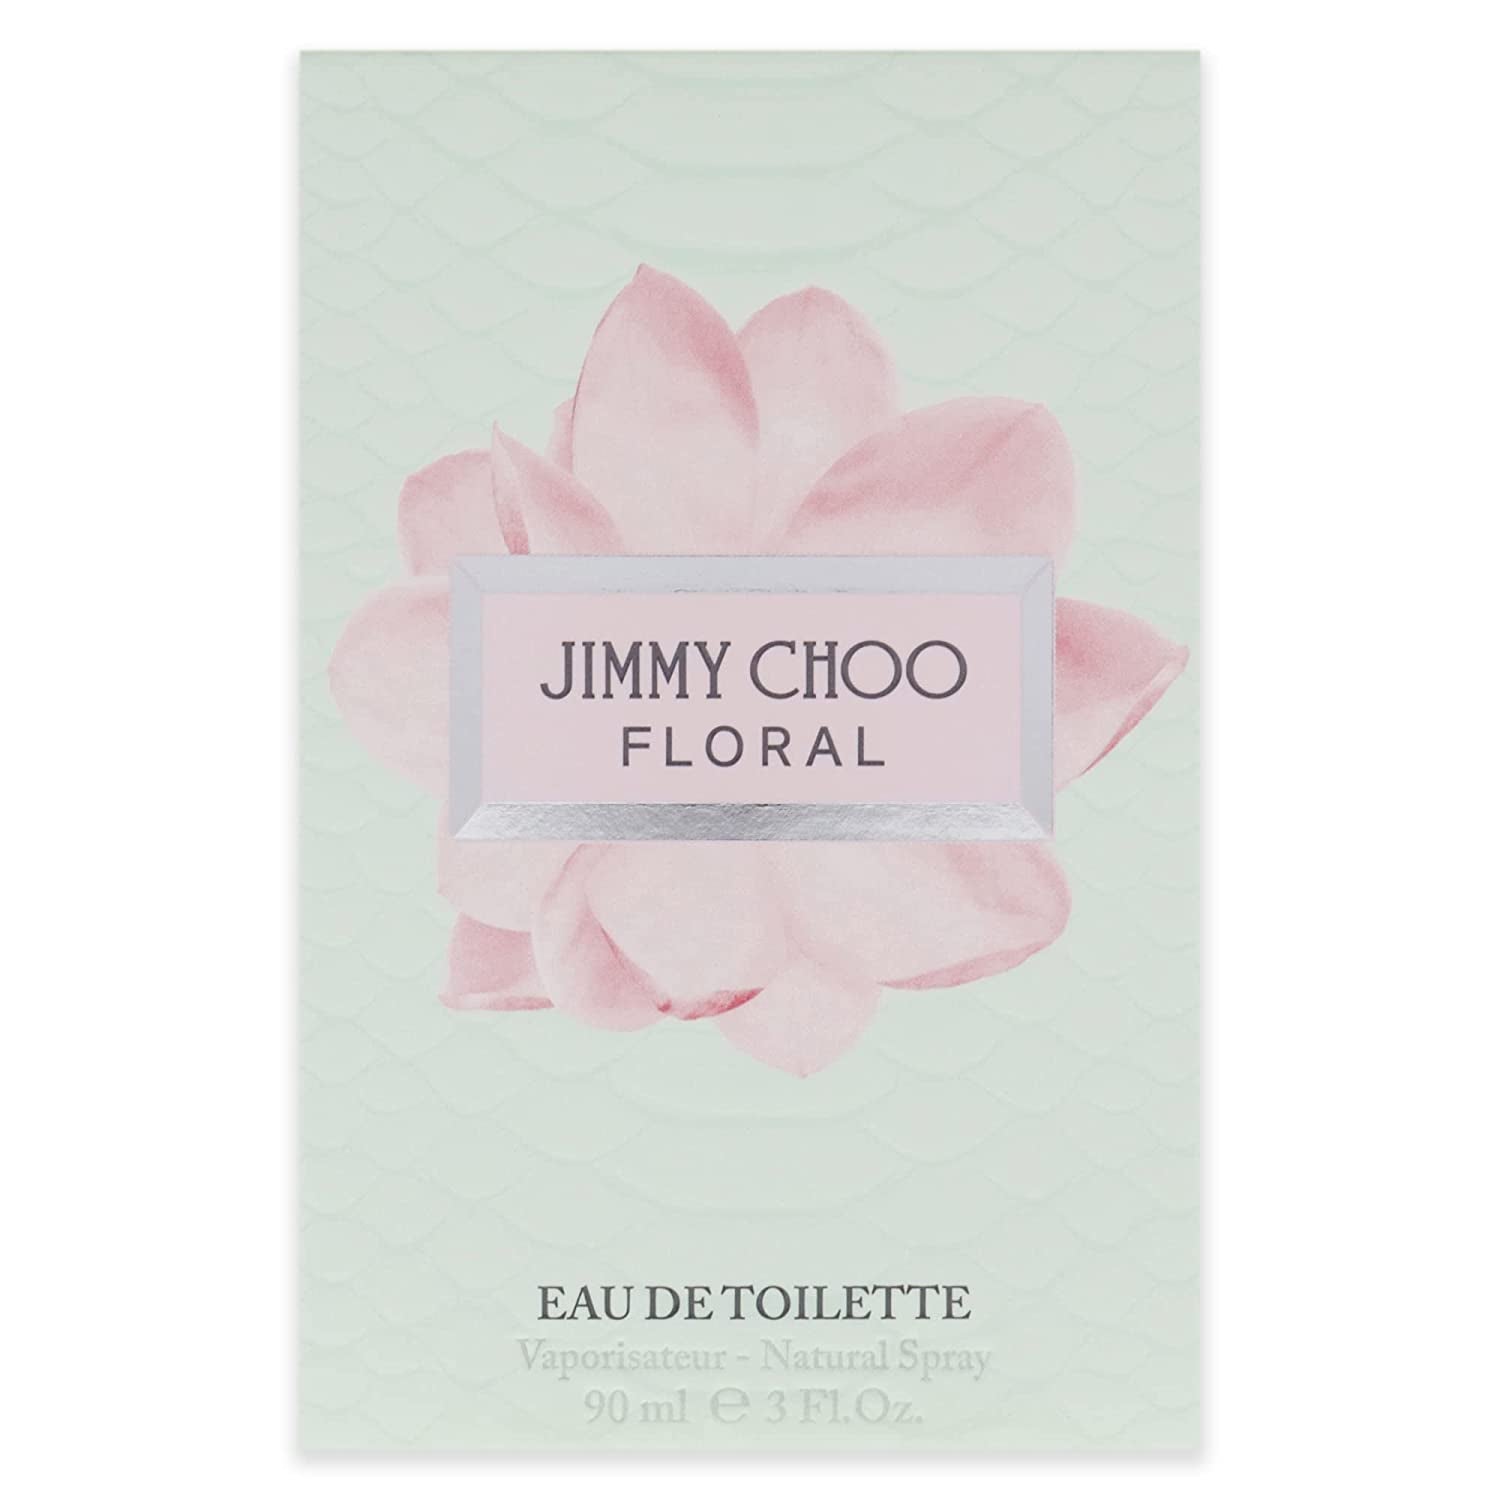 JIMMY CHOO Floral 3.0oz Eau de Toilette Spray